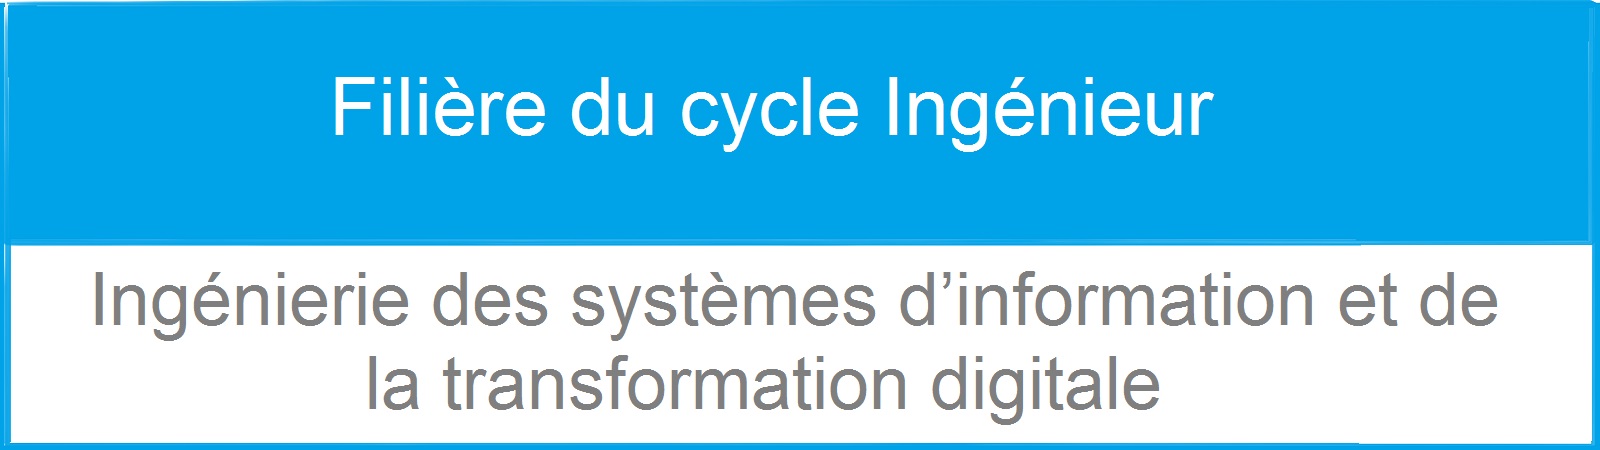 Filière du cycle Ingénieur: Ingénierie des systèmes d’information et de la transformation digitale